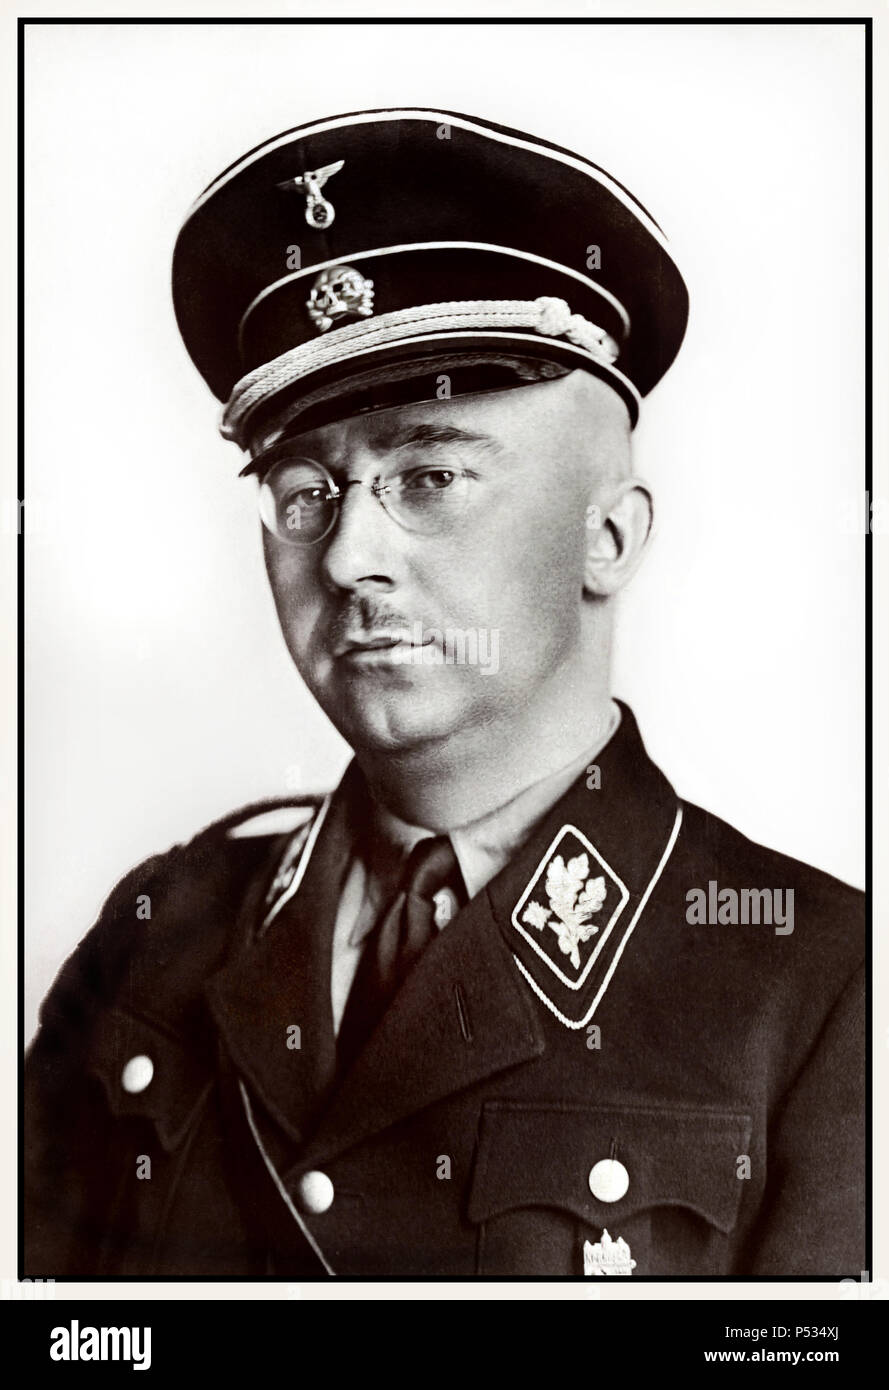 1940 WW2 Heinrich Himmler portrait officiel en uniforme Waffen SS politicien socialiste national allemand commandant militaire nazie police secrète. Himmler a été l'un des hommes les plus puissants de l'Allemagne nazie et l'une des personnes les plus directement responsables de l'Holocauste. A facilité le génocide à travers l'Europe et l'Est. S'est suicidé en 1945 après avoir été capturés fuyant sous une autre identité. Banque D'Images